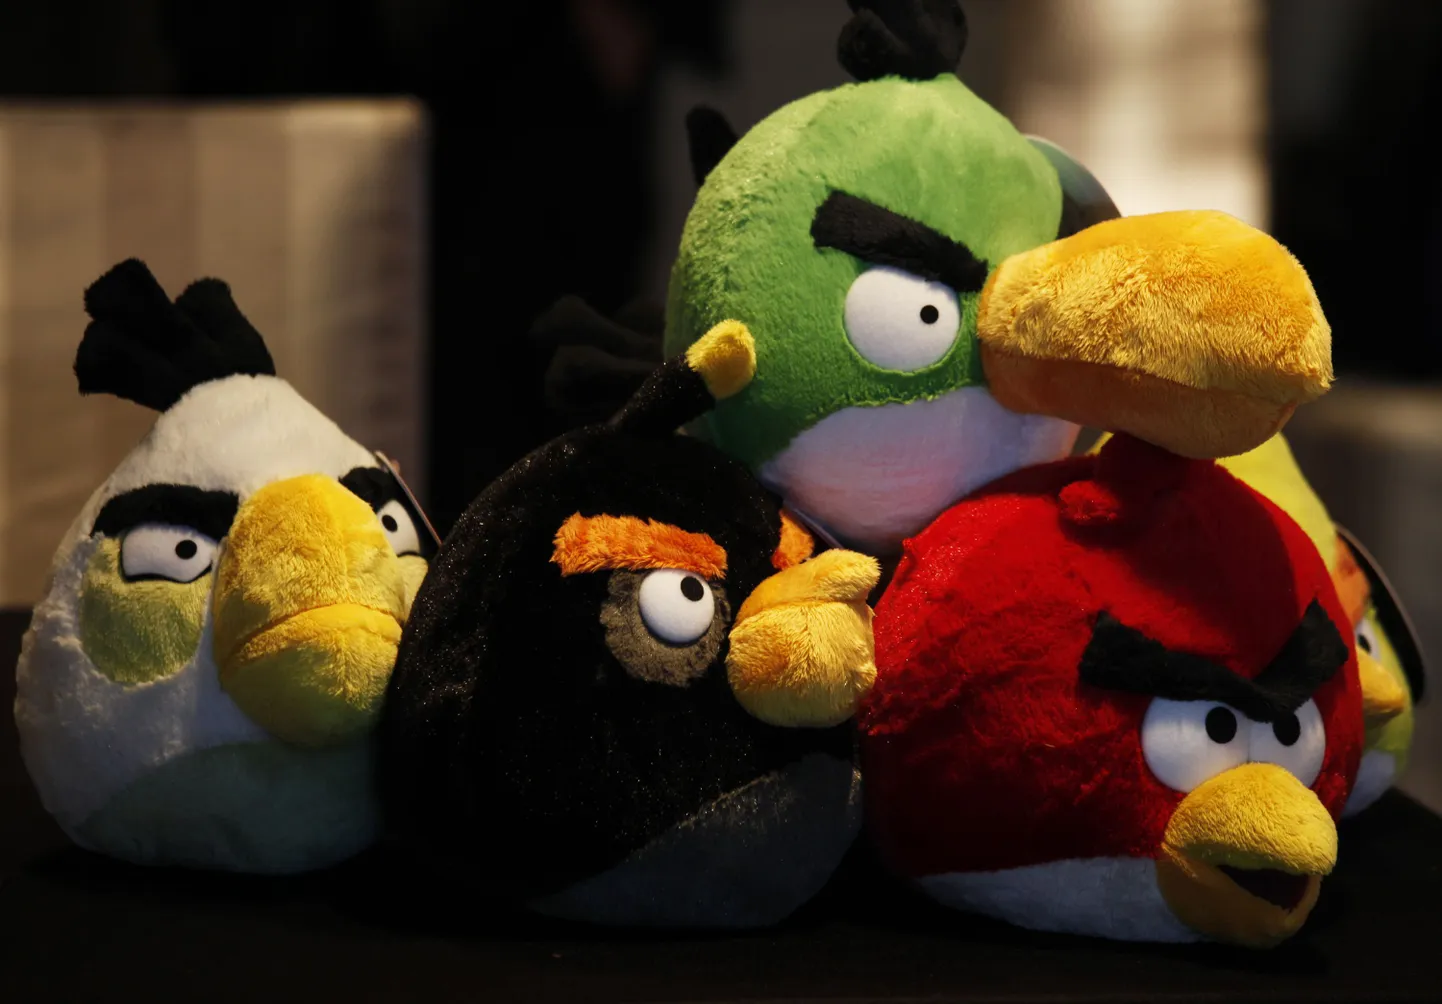 Maailma populaarsemaid mobiilirakendusi on Angry Birds. Pilt on illustratiivne.